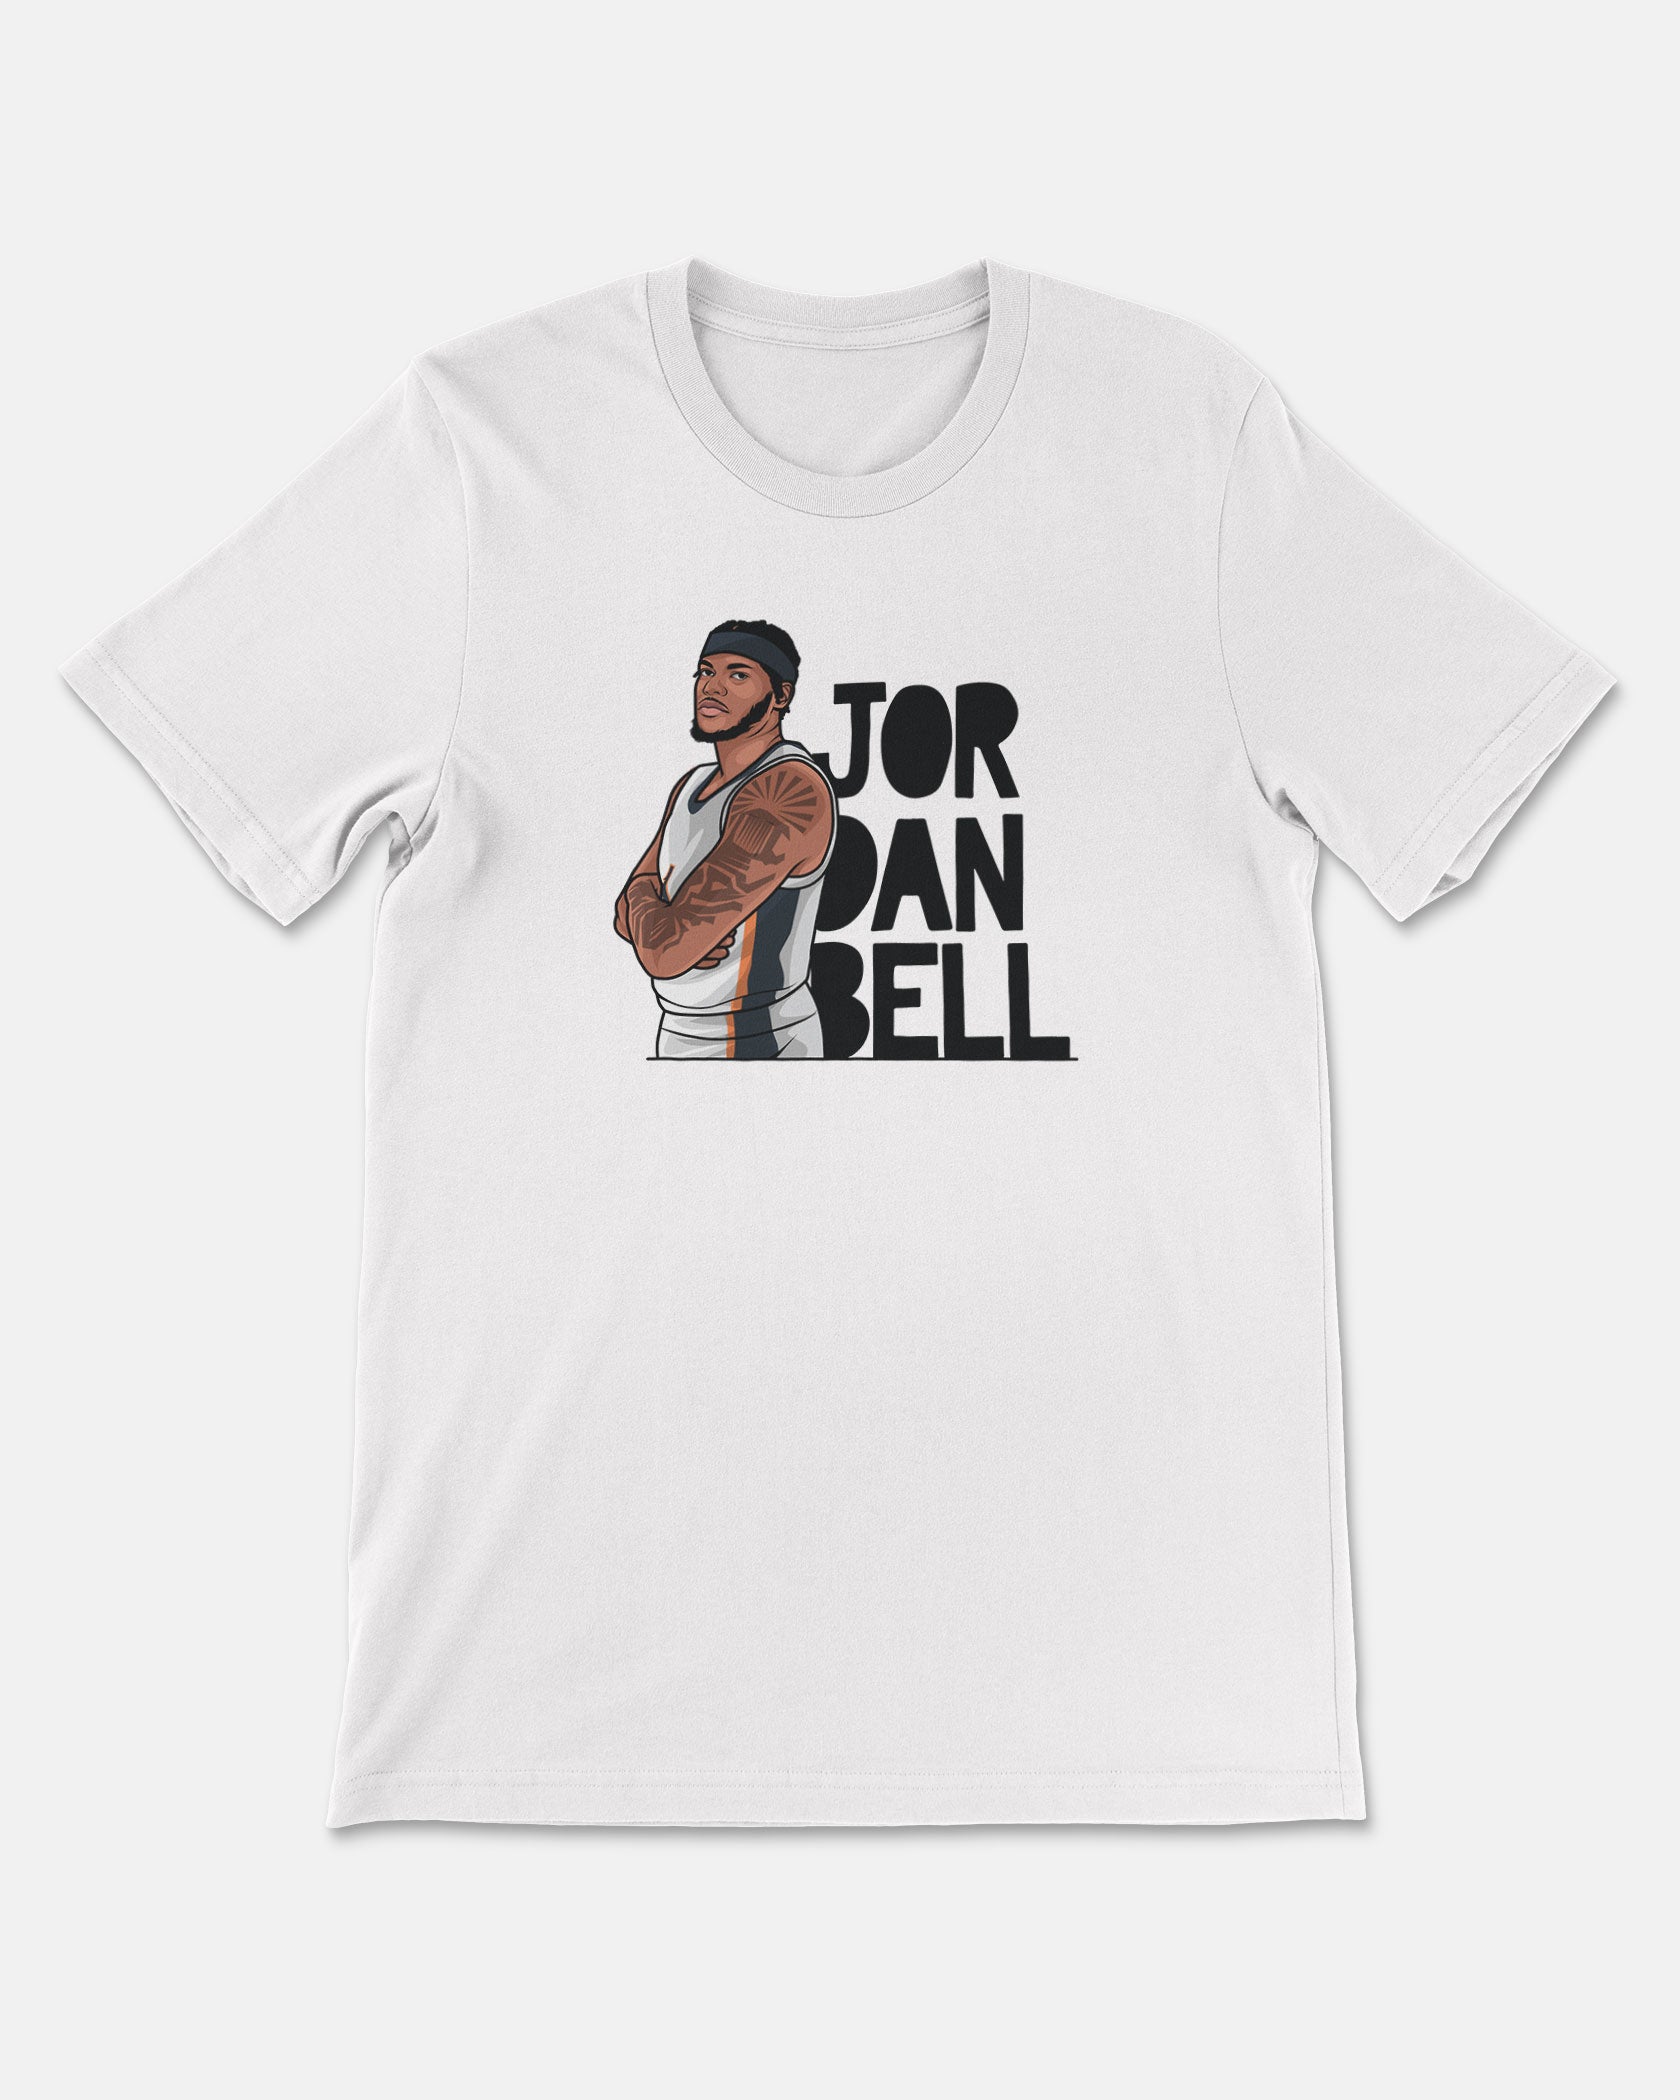 Jordan Bell Shirt 003